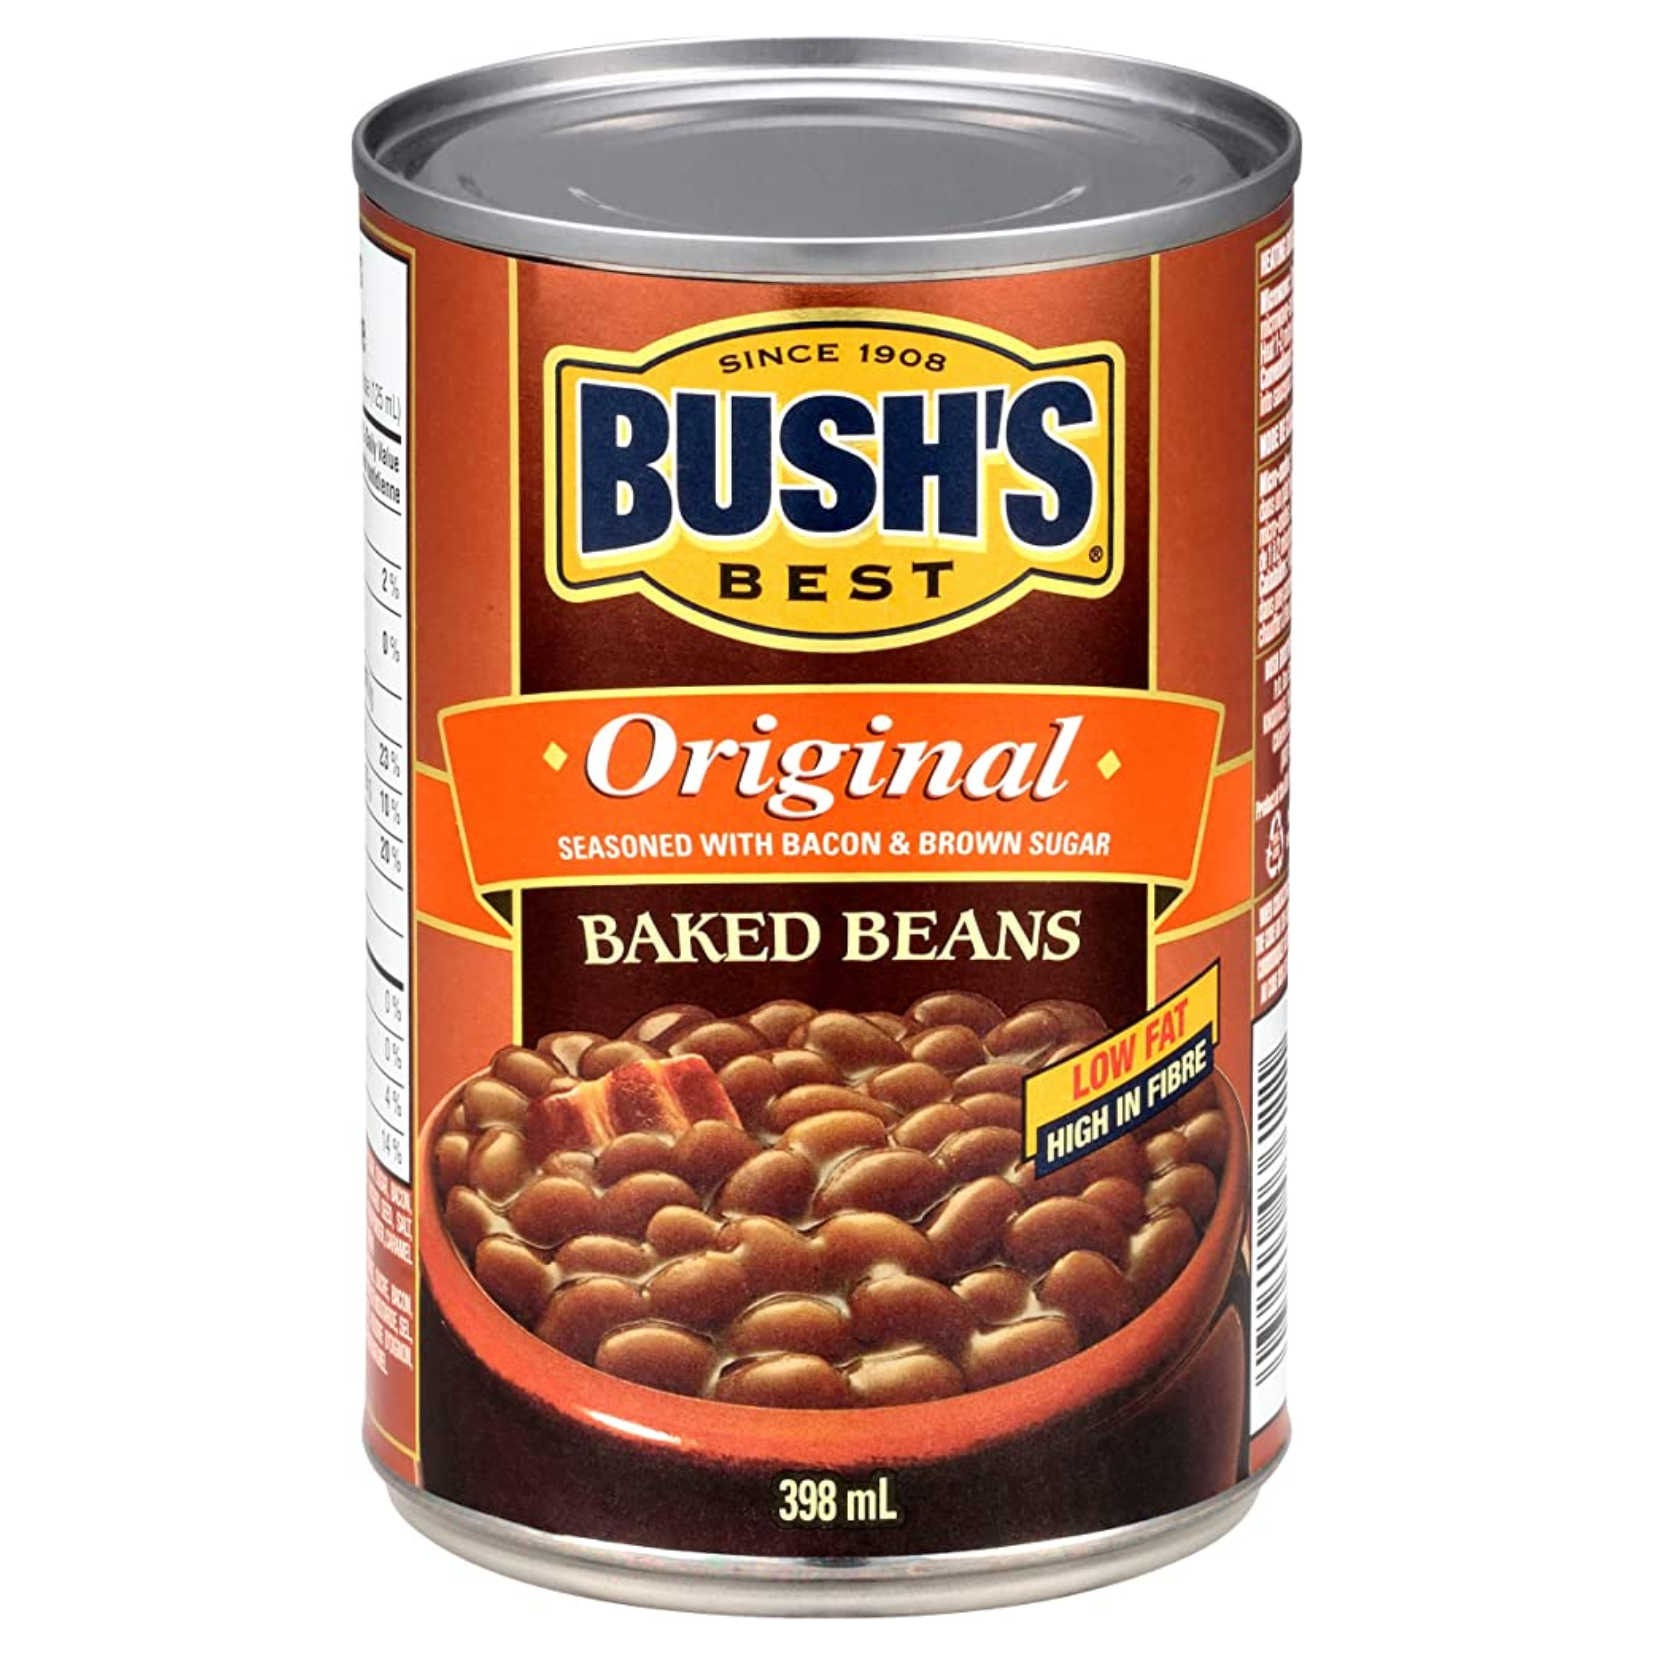 Bush's Best Original Baked Beans 398ml